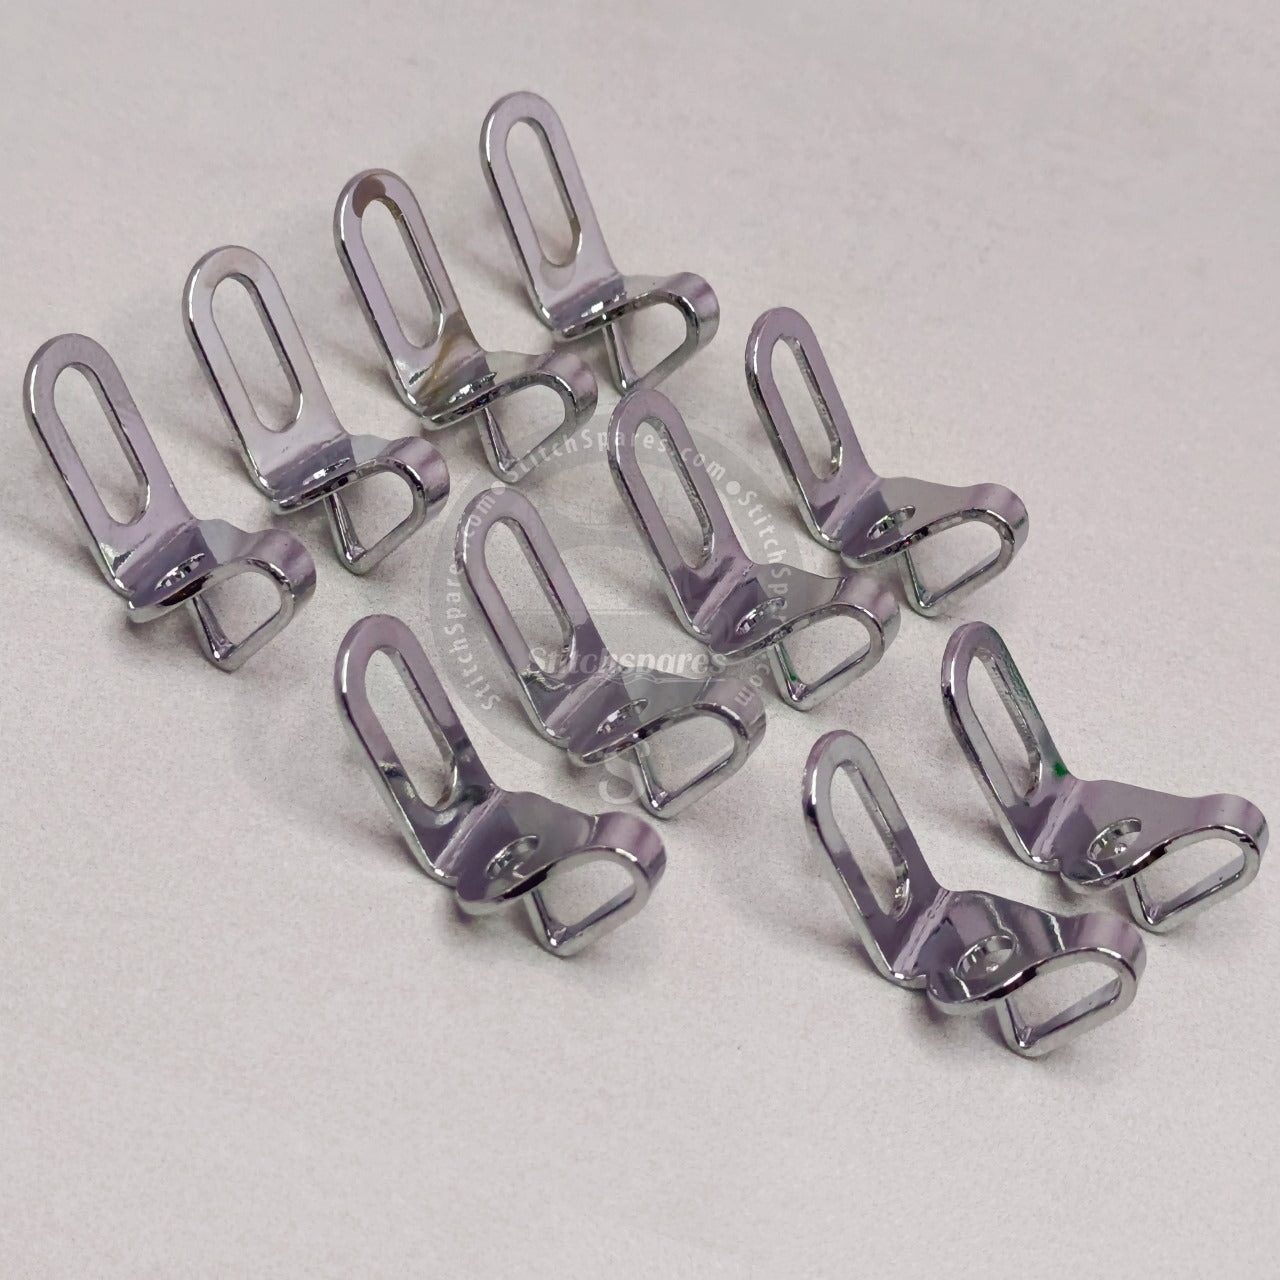 40223721 (402-23721) Guía de hilo (ORIGINAL DE JUKI) JUKI DU-1481-7 Pie móvil Pieza de repuesto para máquina de coser con puntada de pespunte y alimentación compuesta al unísono con aguja única